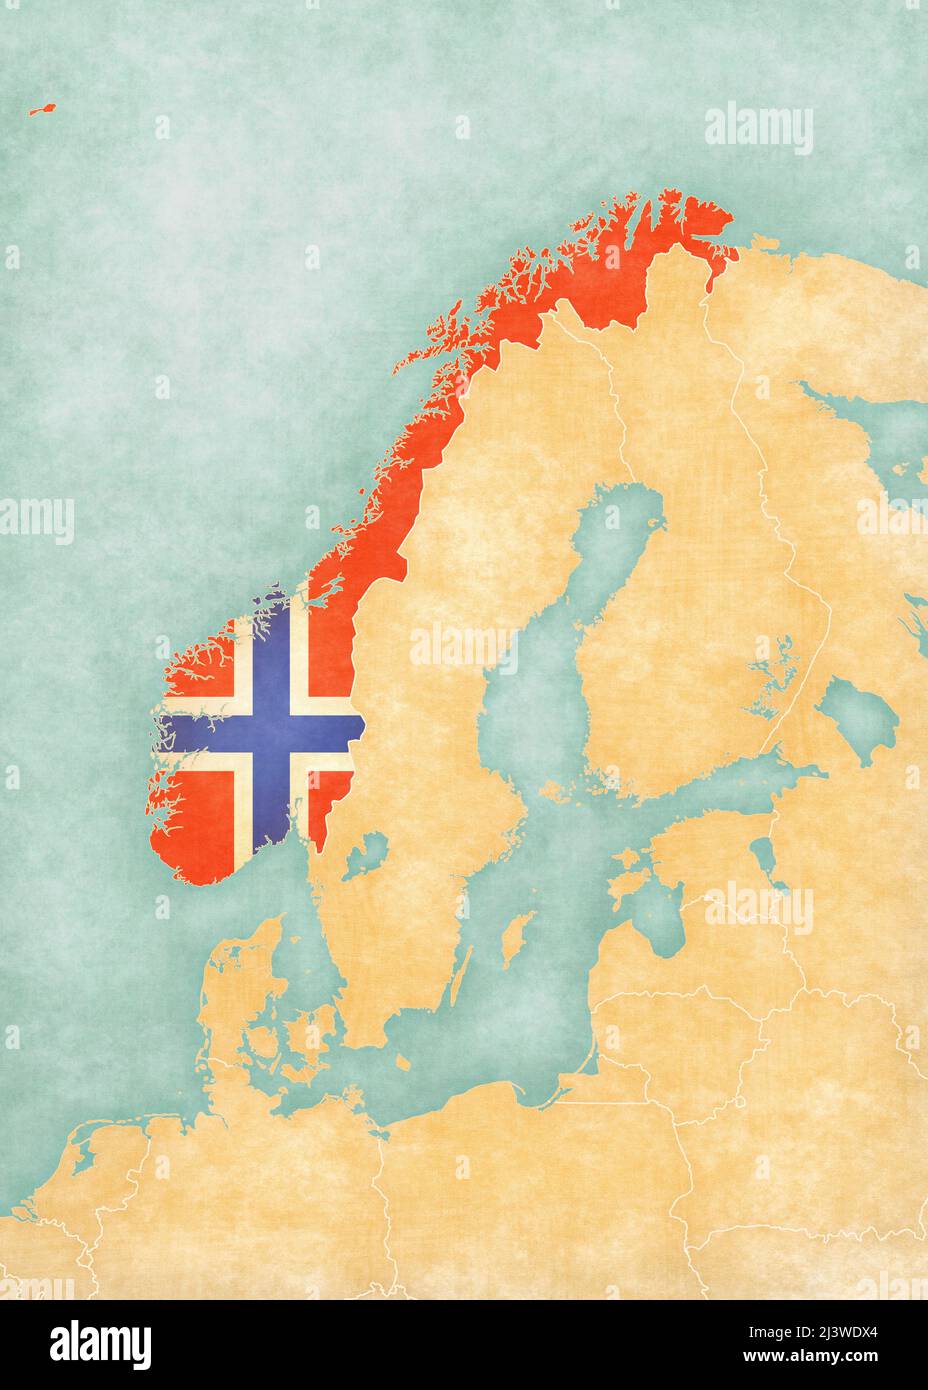 Norvegia (bandiera norvegese) sulla mappa della Scandinavia in morbido grunge e stile vintage, come la pittura acquerello su carta vecchia. Foto Stock